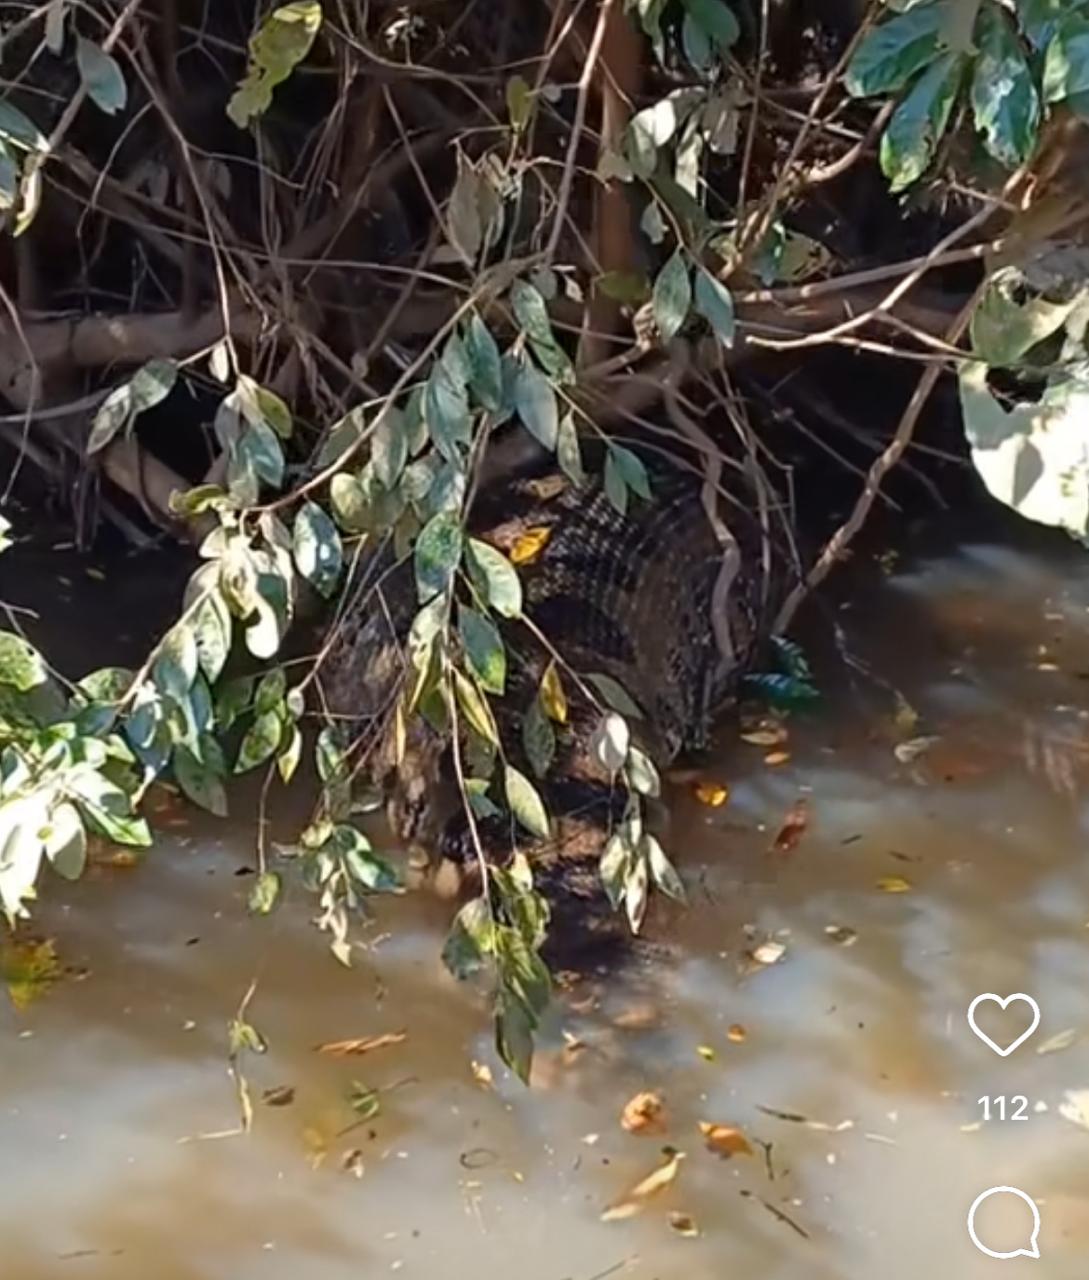 Sucuri gigante se banqueteia com capivara no Pantanal: imagens impressionantes revelam comportamento fascinante da cobra